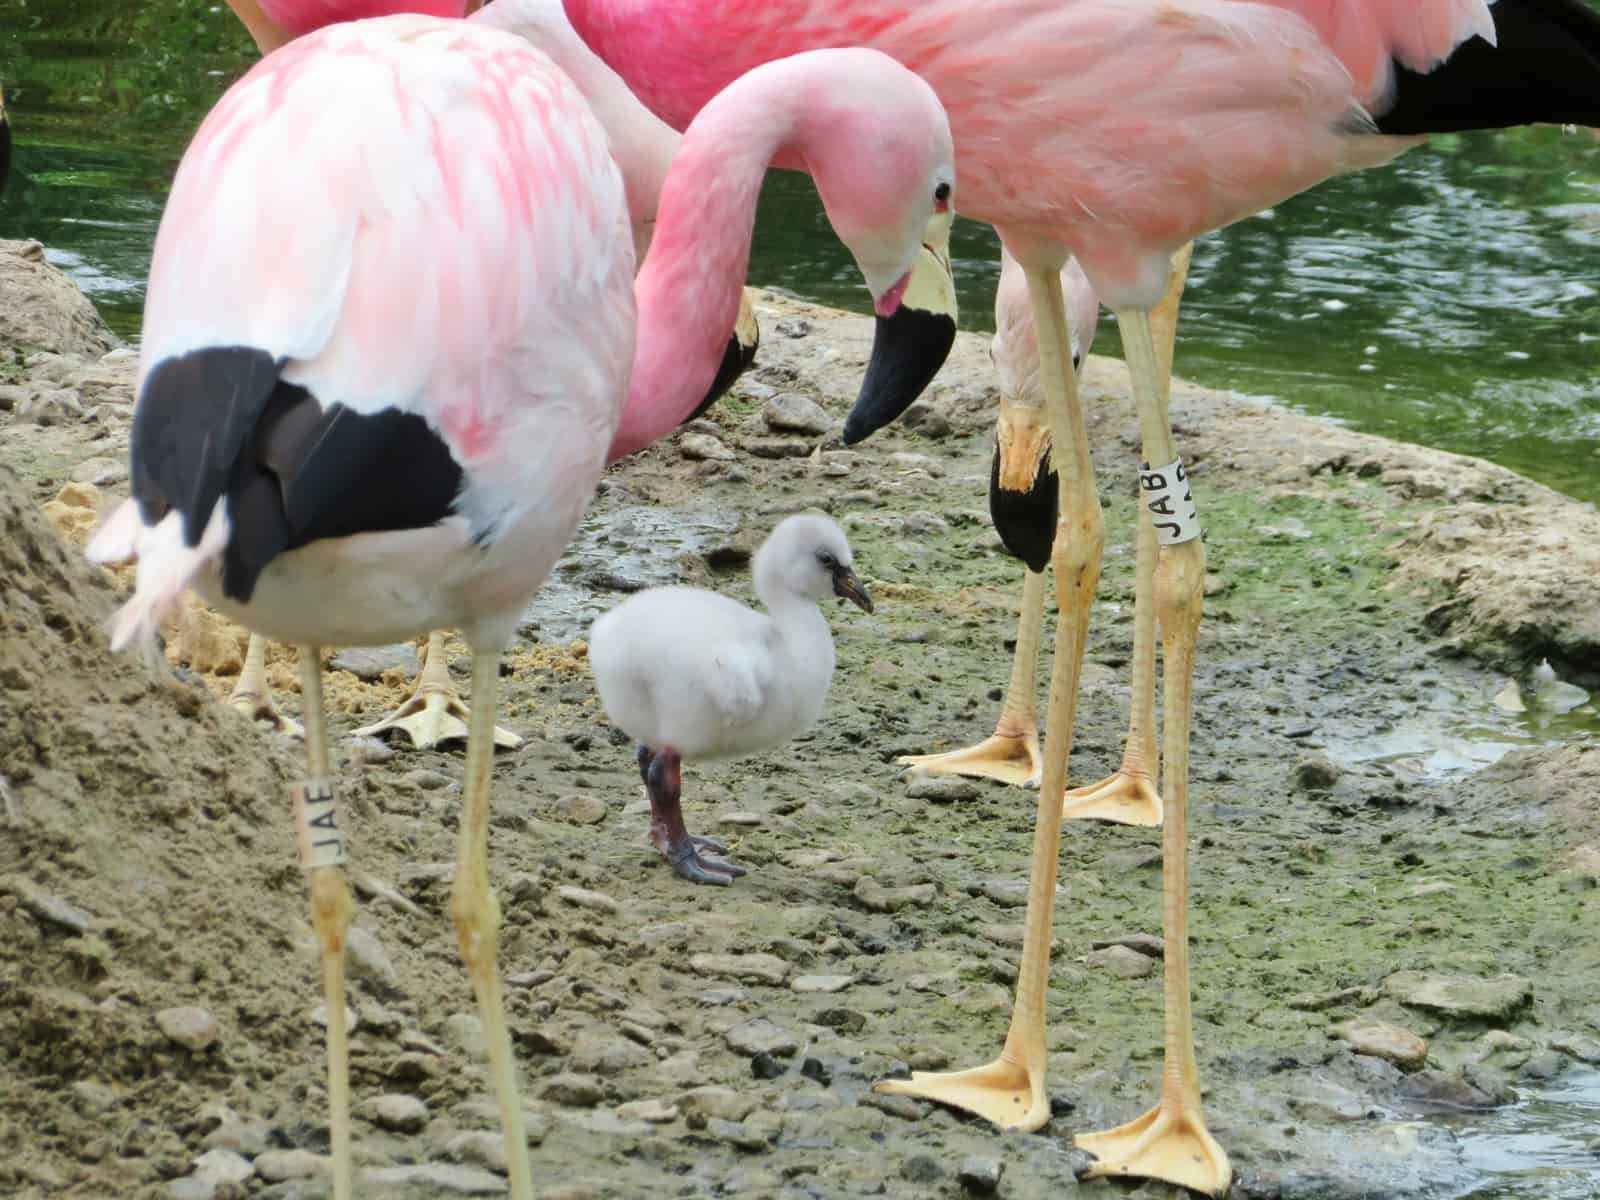 WWT Slimbridge, Gloucestershire - baby flamingo with adult flamingos